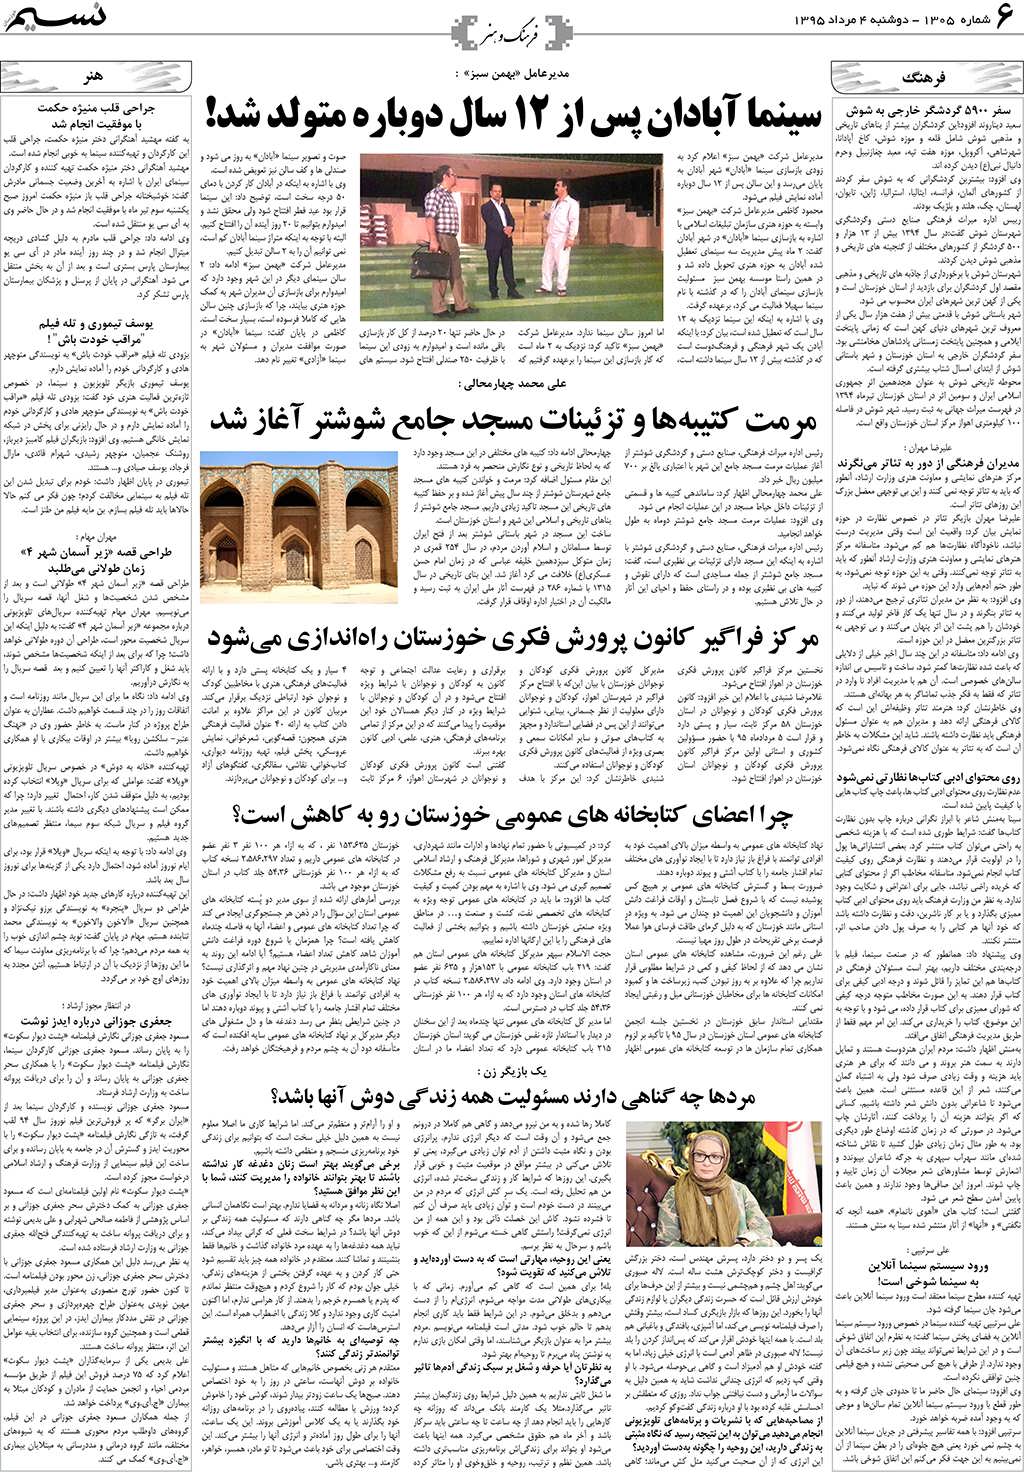 صفحه فرهنگ و هنر روزنامه نسیم شماره 1305